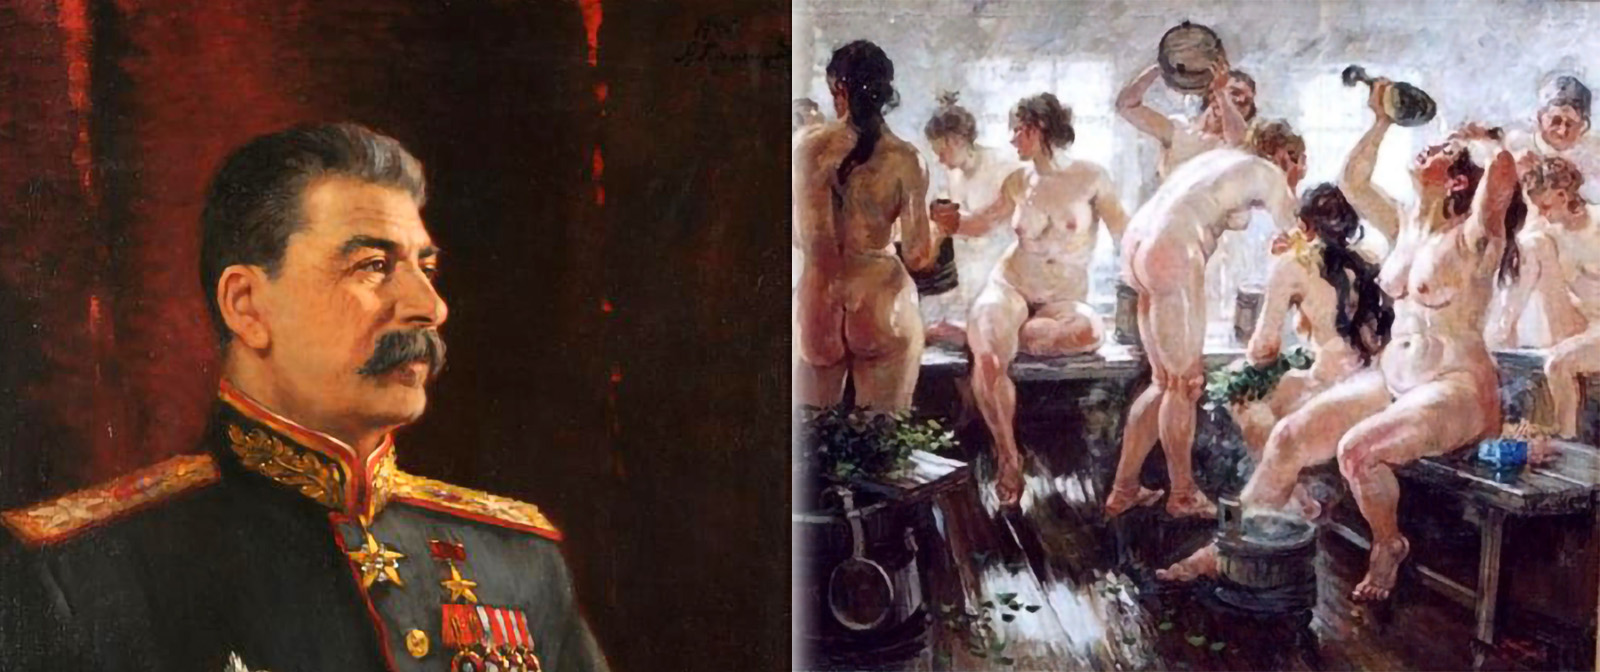 Приспособленец или жертва обстоятельств? Кем на самом деле был «любимый художник Сталина» Александр Герасимов?